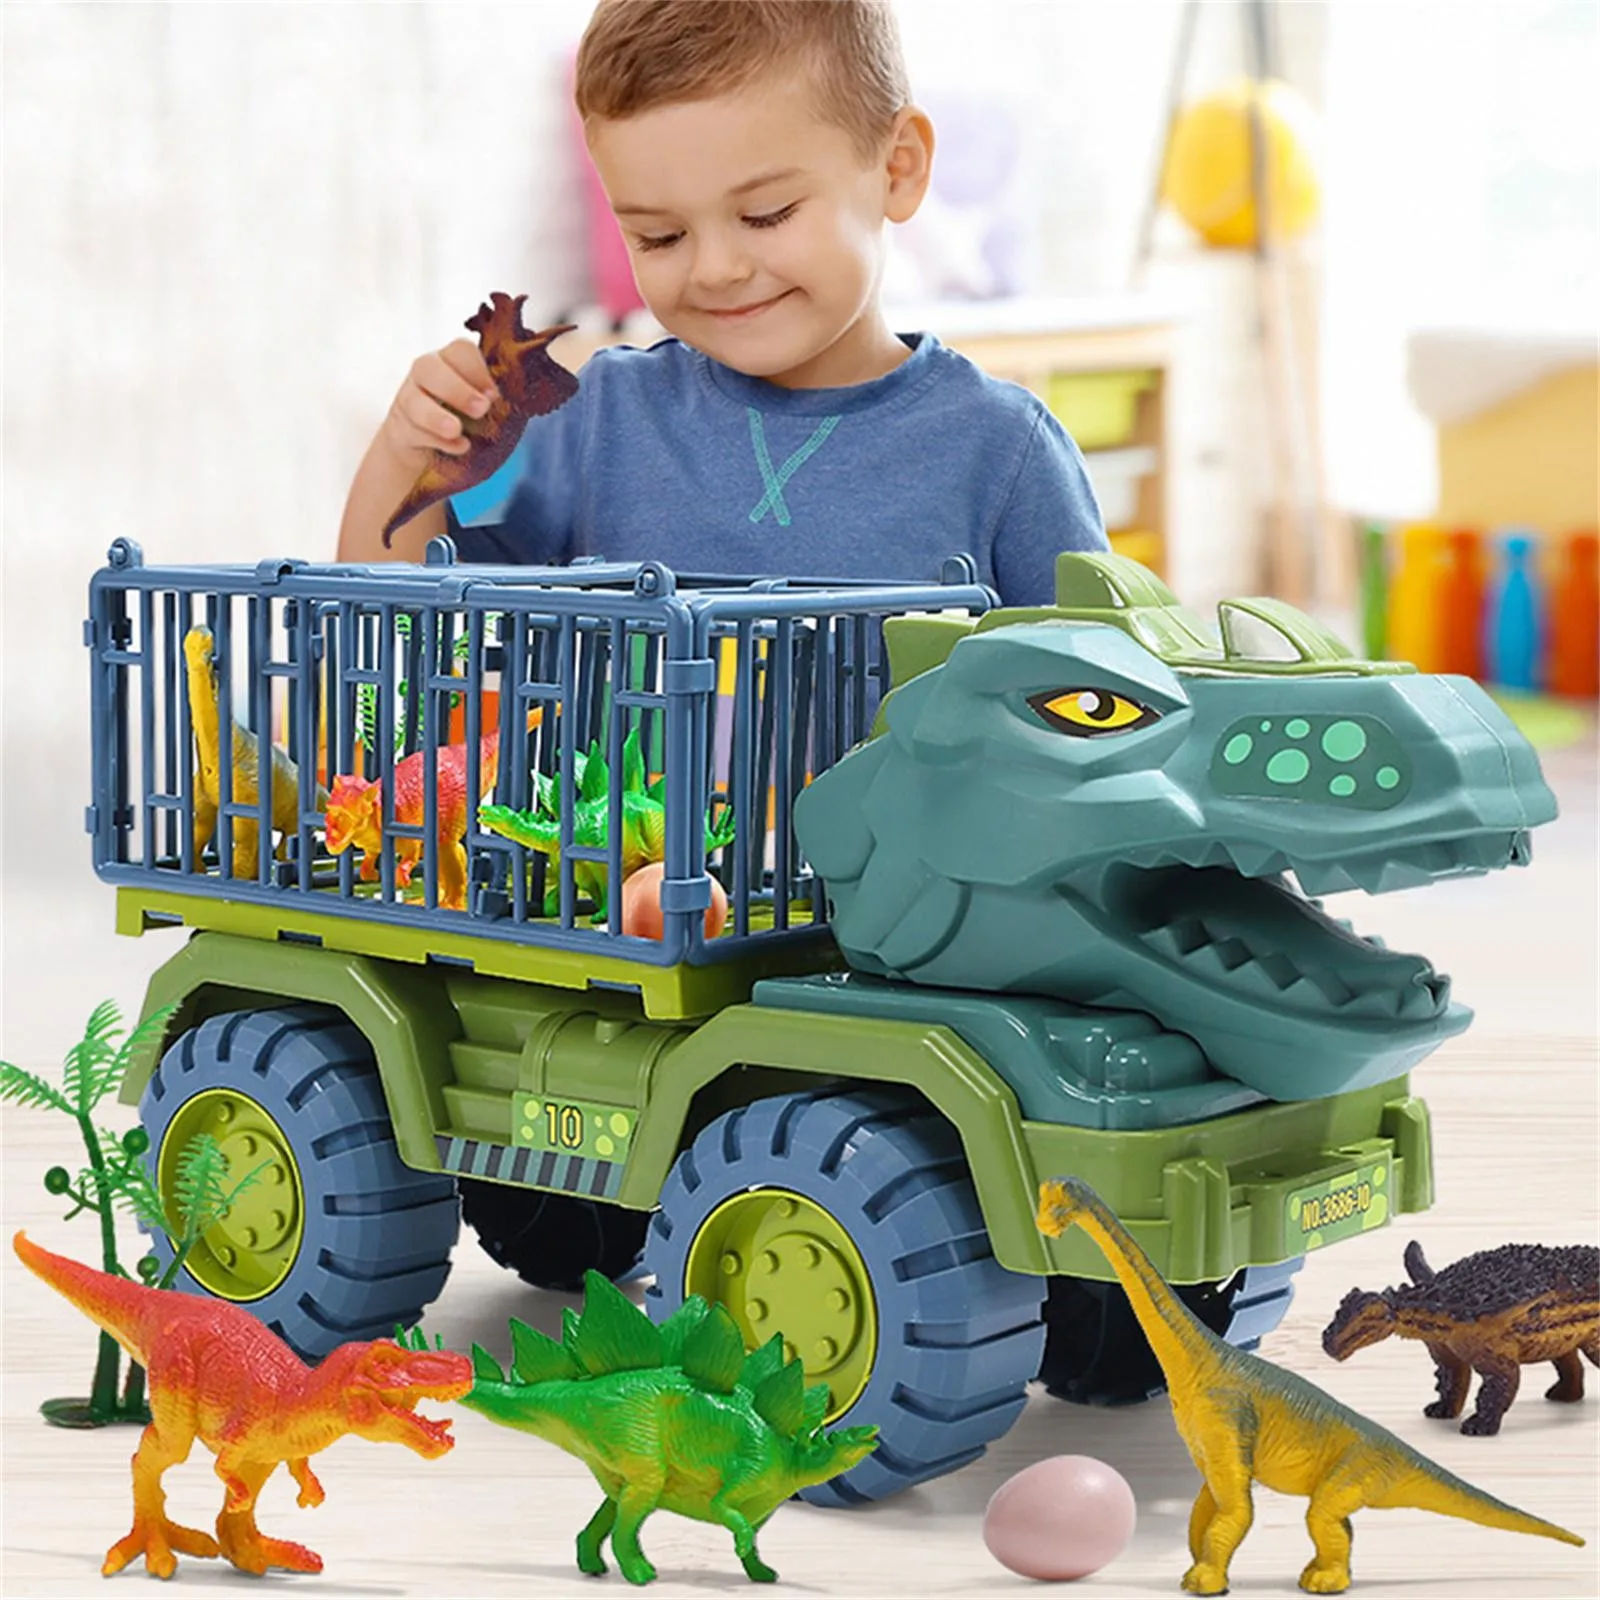 

Автомобиль-динозавр 39 см, Инженерная модель автомобиля, игрушечный инерционный транспорт для детей, игрушечный автомобиль для мальчиков, подарок динозавра